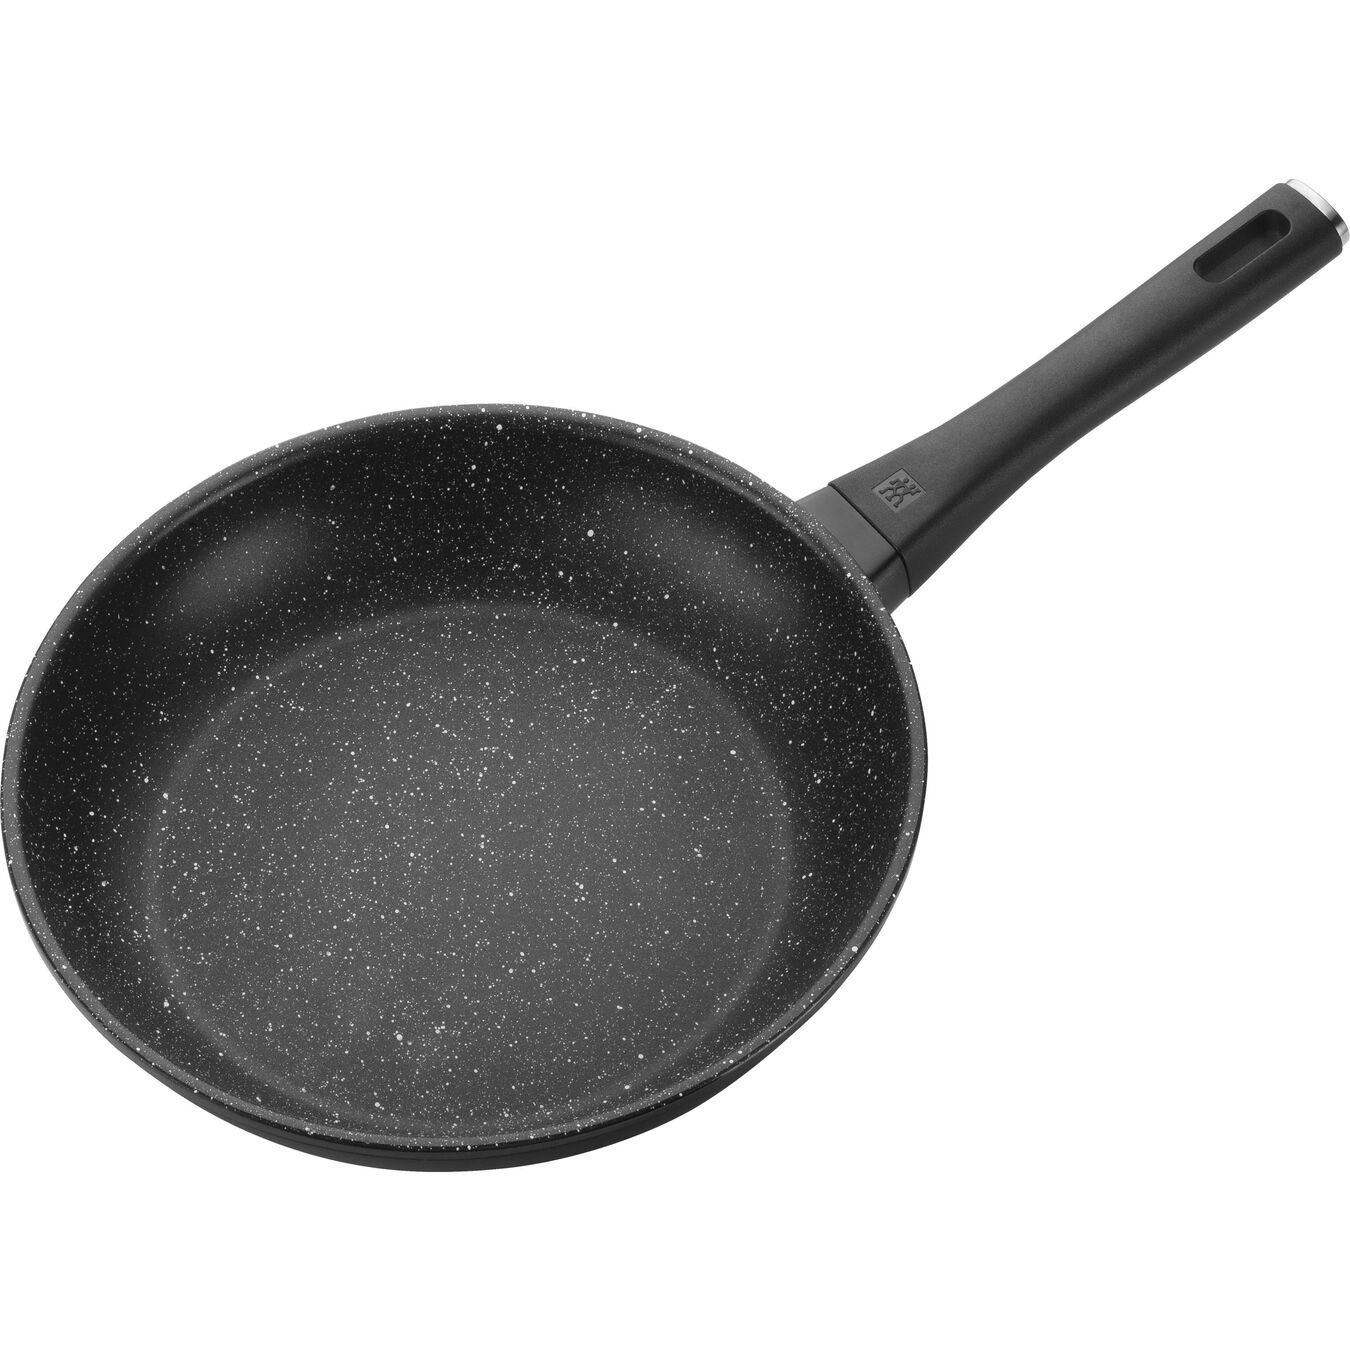 28 cm / 11 inch aluminium Frying pan,,large 4